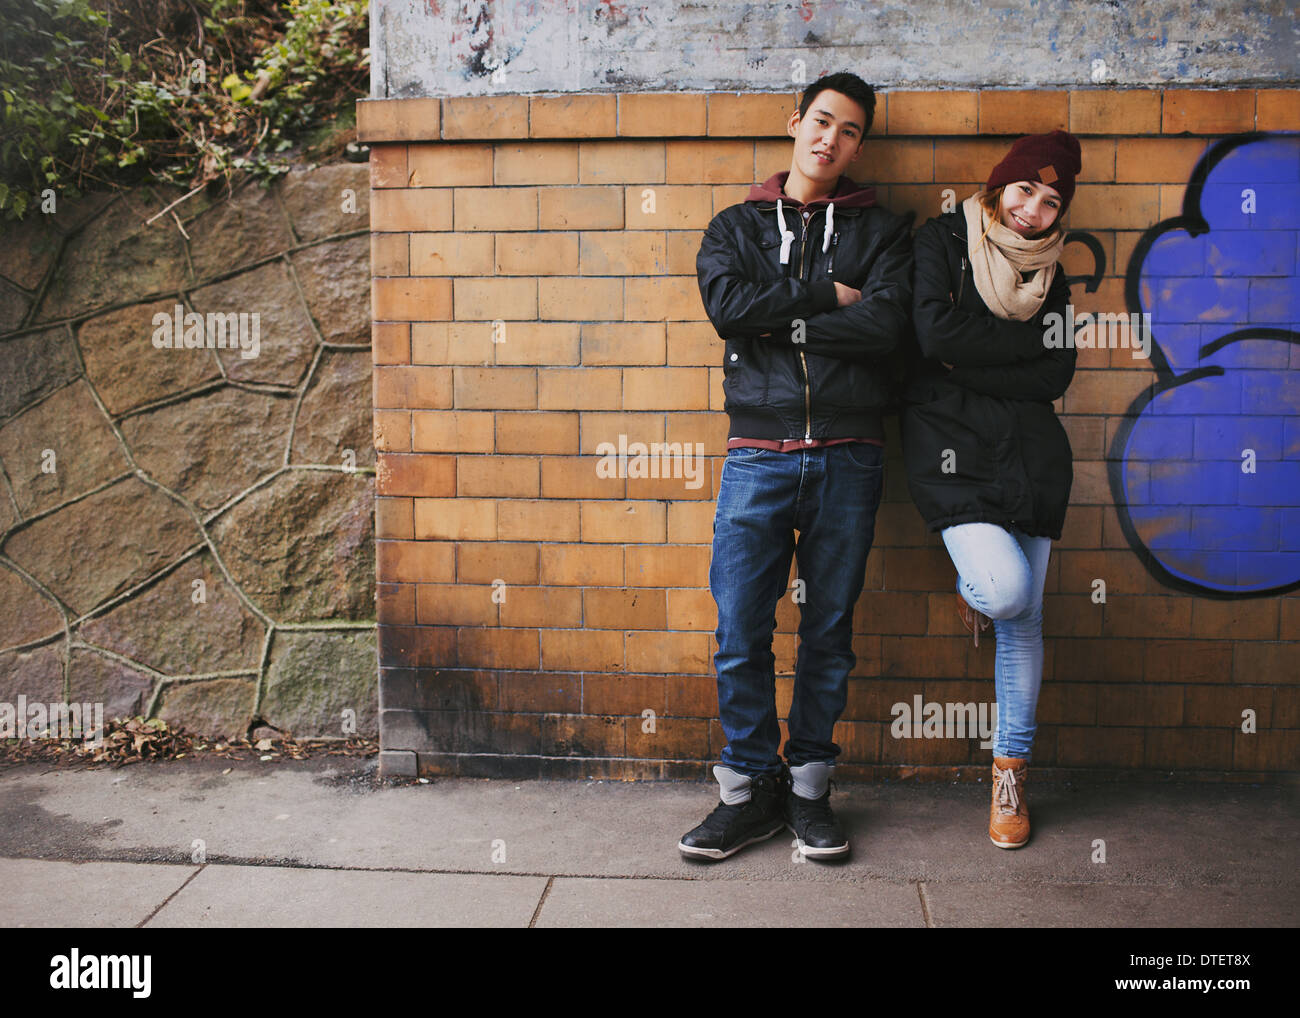 Schöner junger Mann und Frau in warme Kleidung zusammen stützte sich auf eine Wand im Freien stehen. Asiatische Teenager-Paar posieren Stockfoto